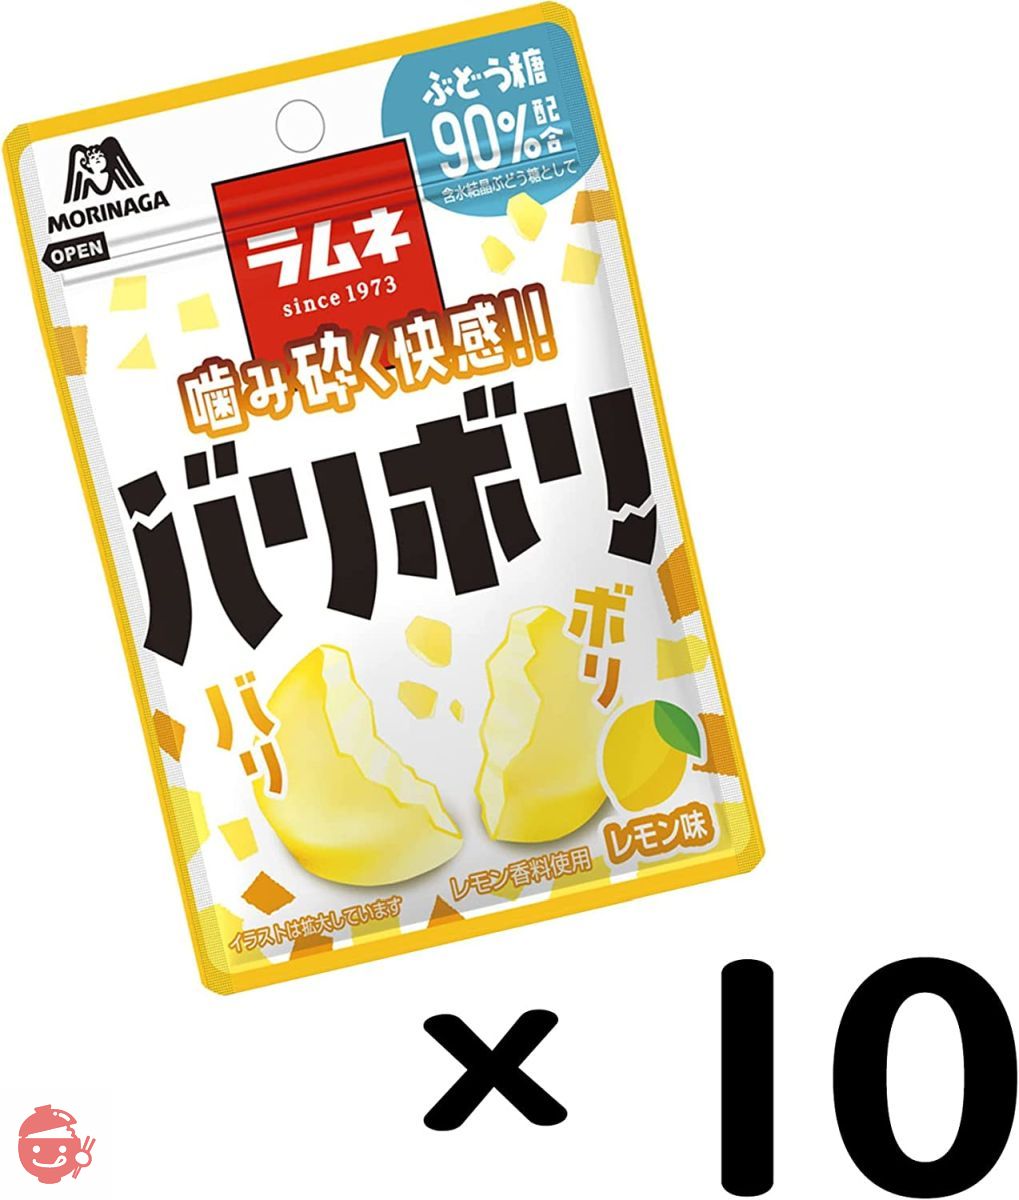 森永製菓 バリボリラムネ<レモン味> 32g×10袋の画像